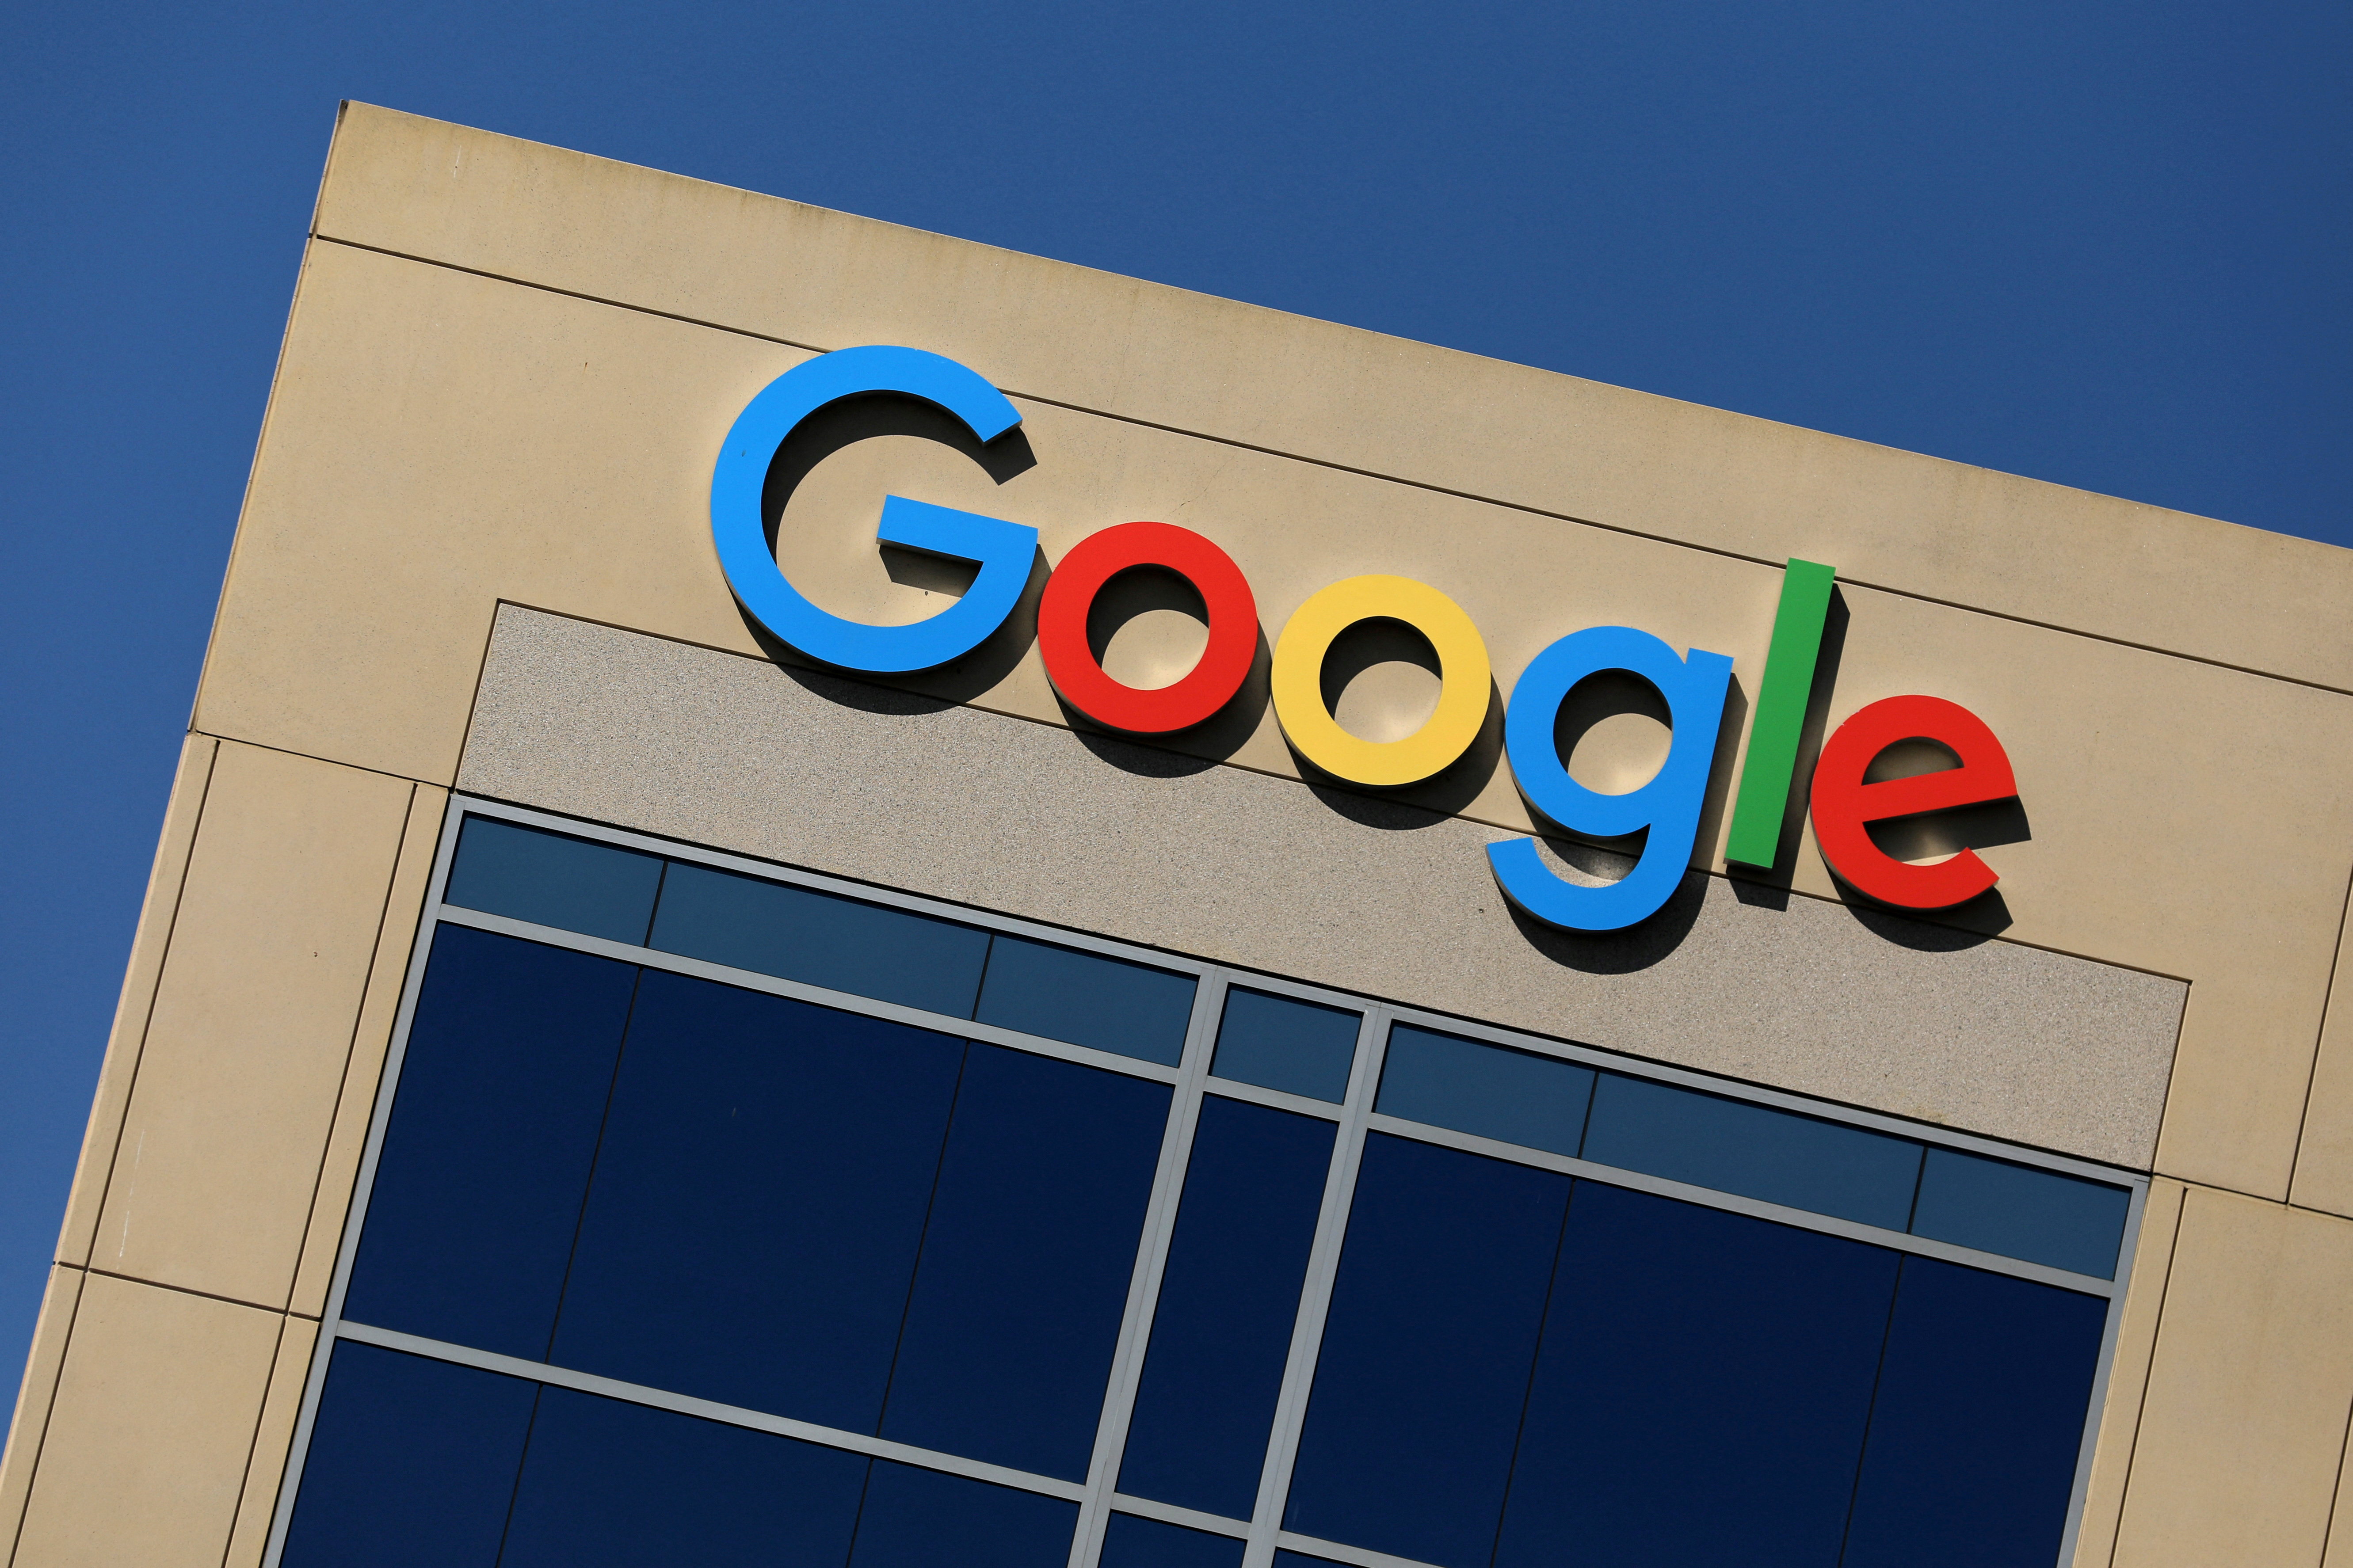 Publicité en ligne : Google accusé d'avoir abusé de sa position dominante, il dément